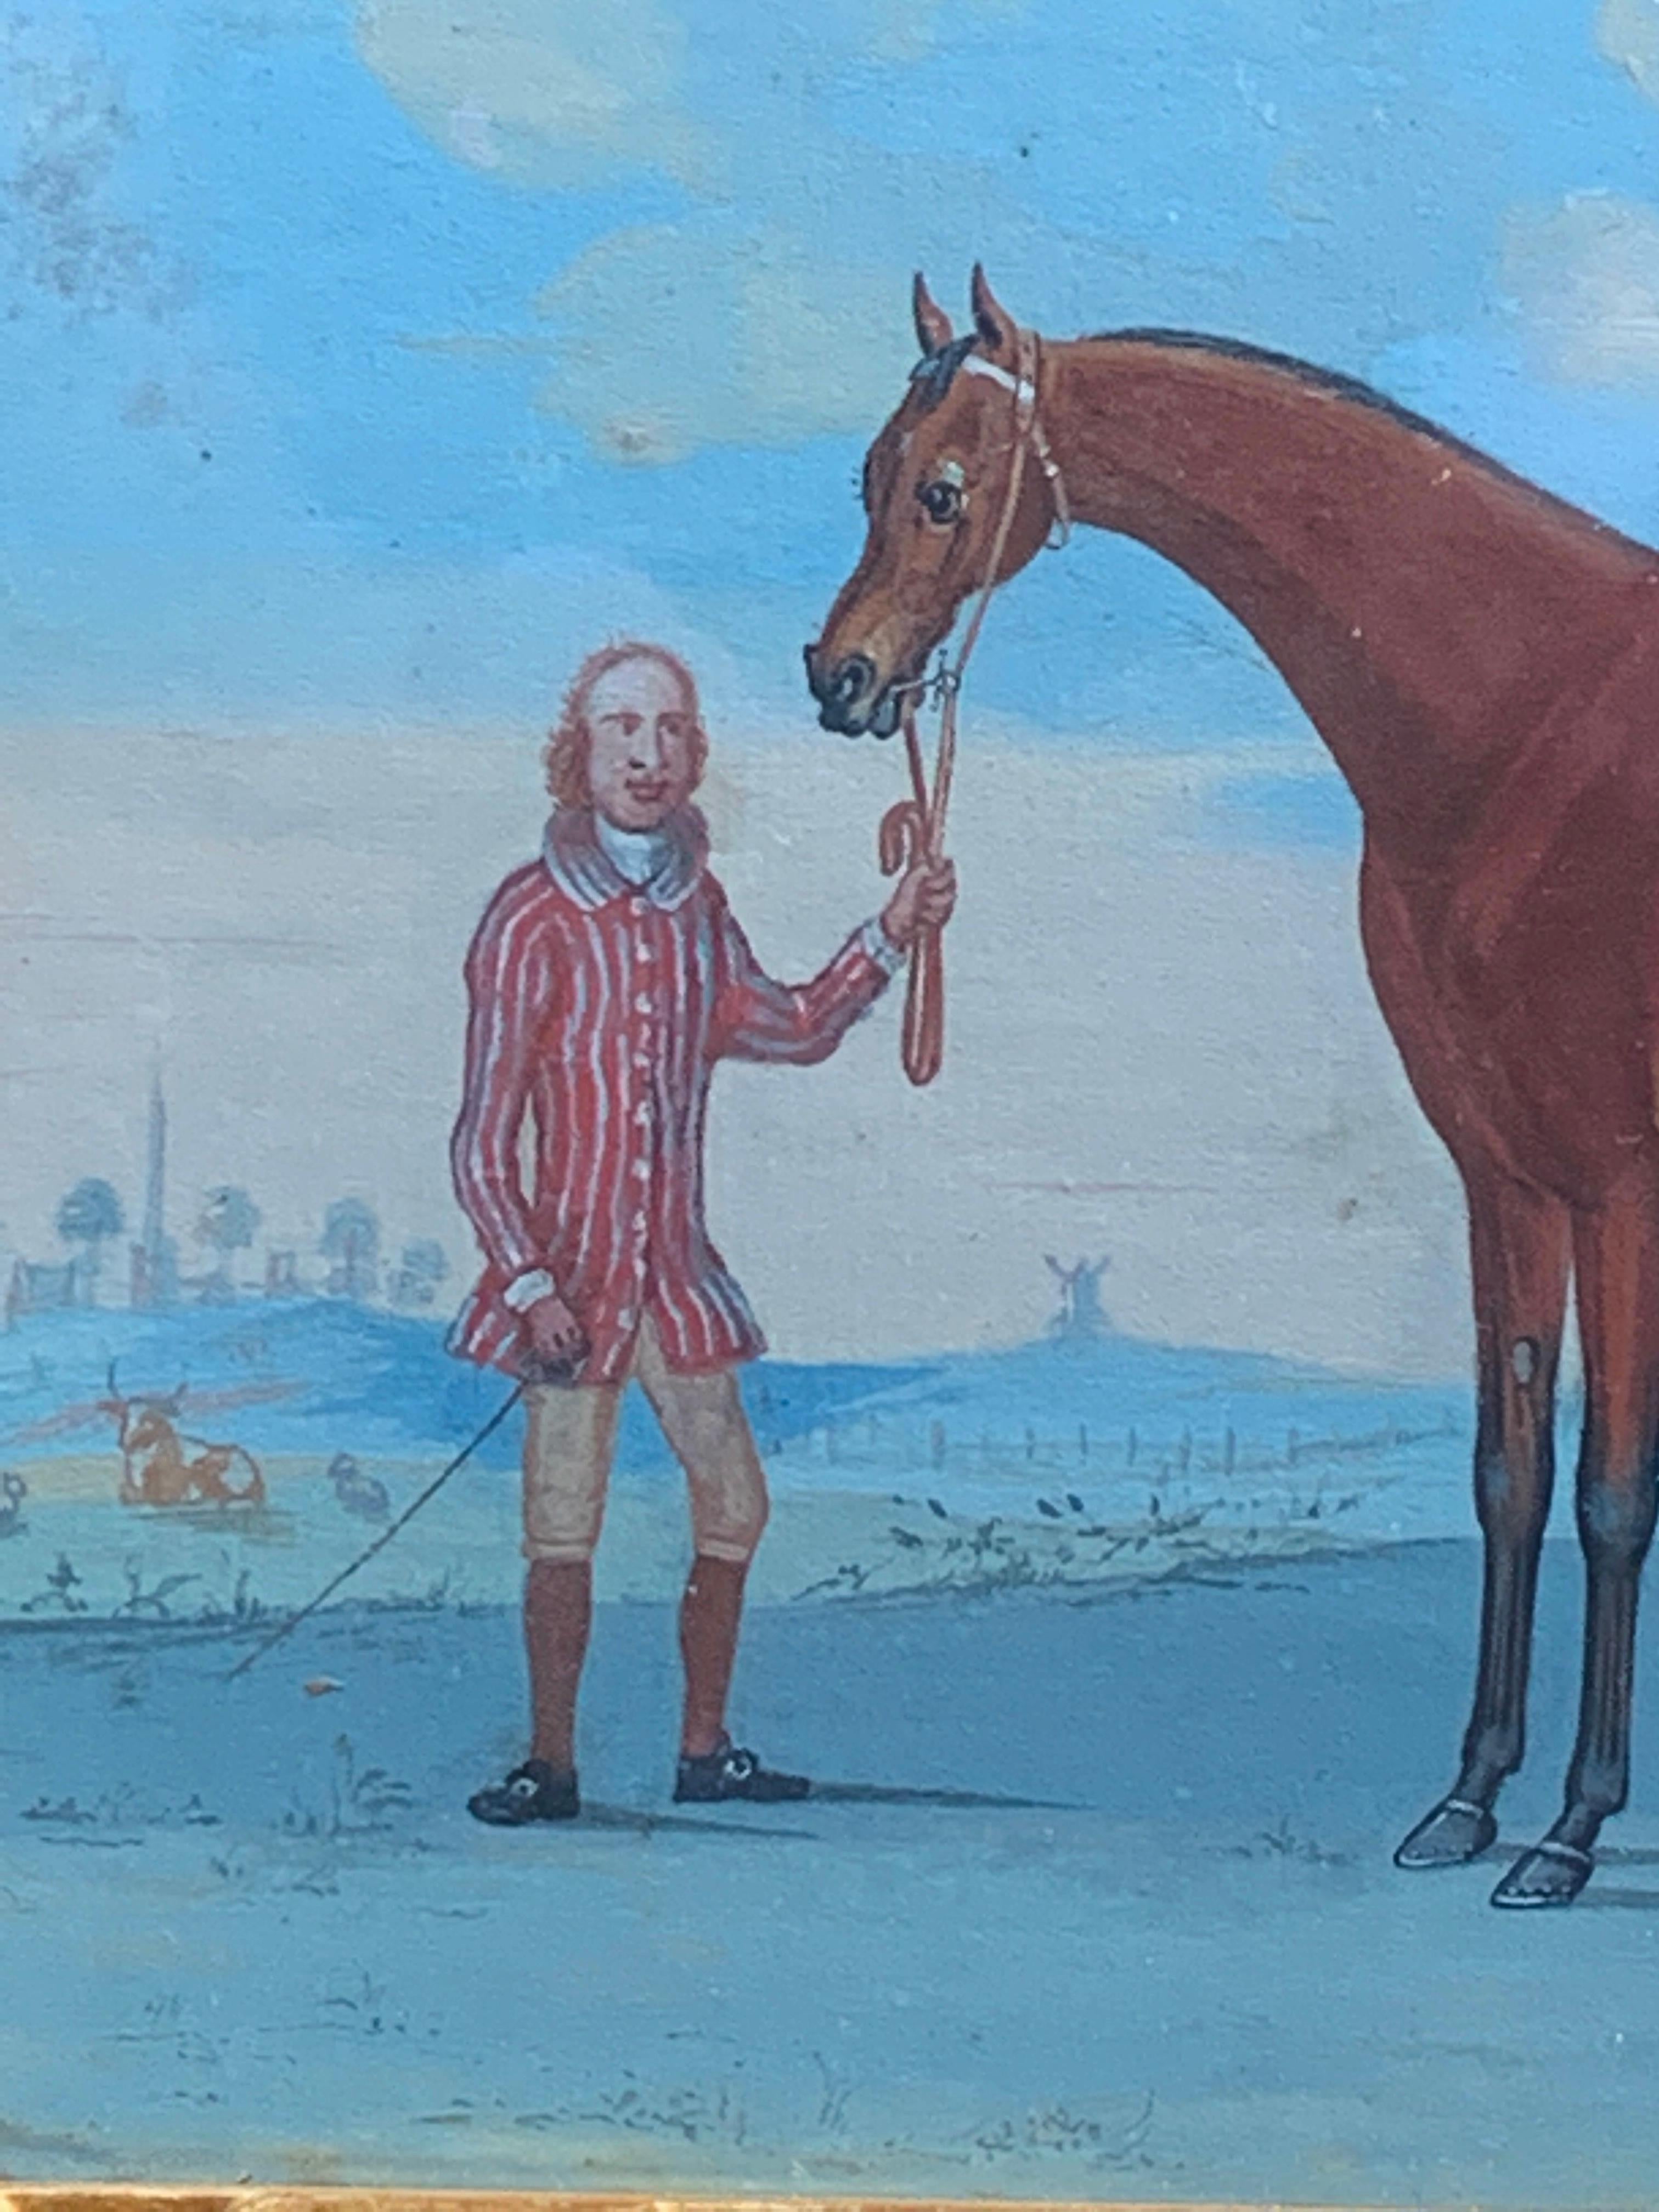 Wunderschöne englische Gouache auf Papier aus dem 18. Jahrhundert mit einer englischen Szene eines Pferdepflegers mit Pferd in einer Landschaft.

Eines von fünf Exemplaren, die alle in Hogarth-Rahmen gerahmt sind. 

L. Green gehörte zu einer